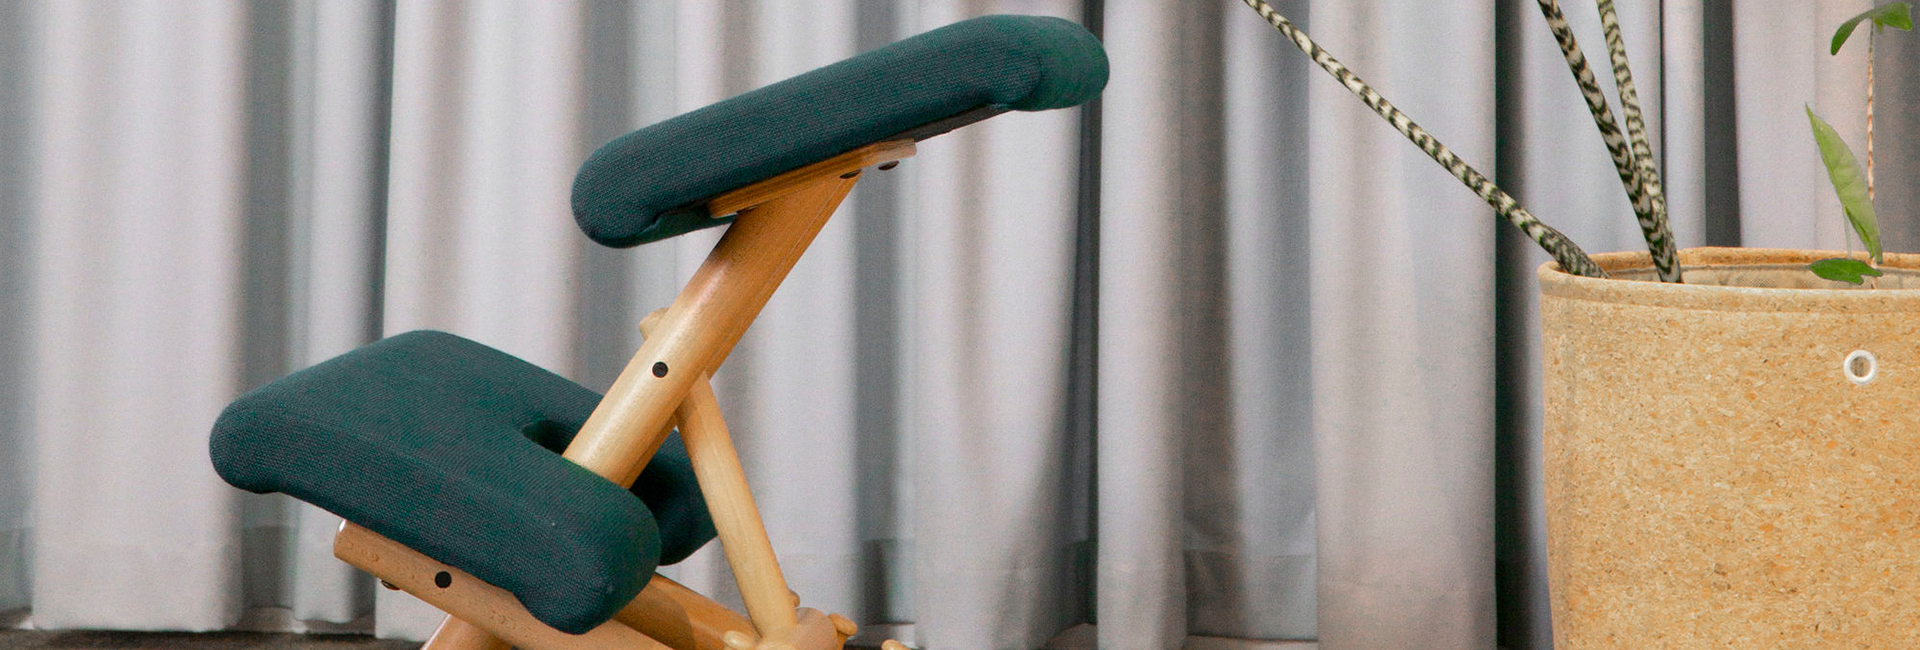 Ergonomische Kniestühle lassen sich auf Ihr Sitzverhalten abgestimmt anpassen. Bildquelle: Profi-Line